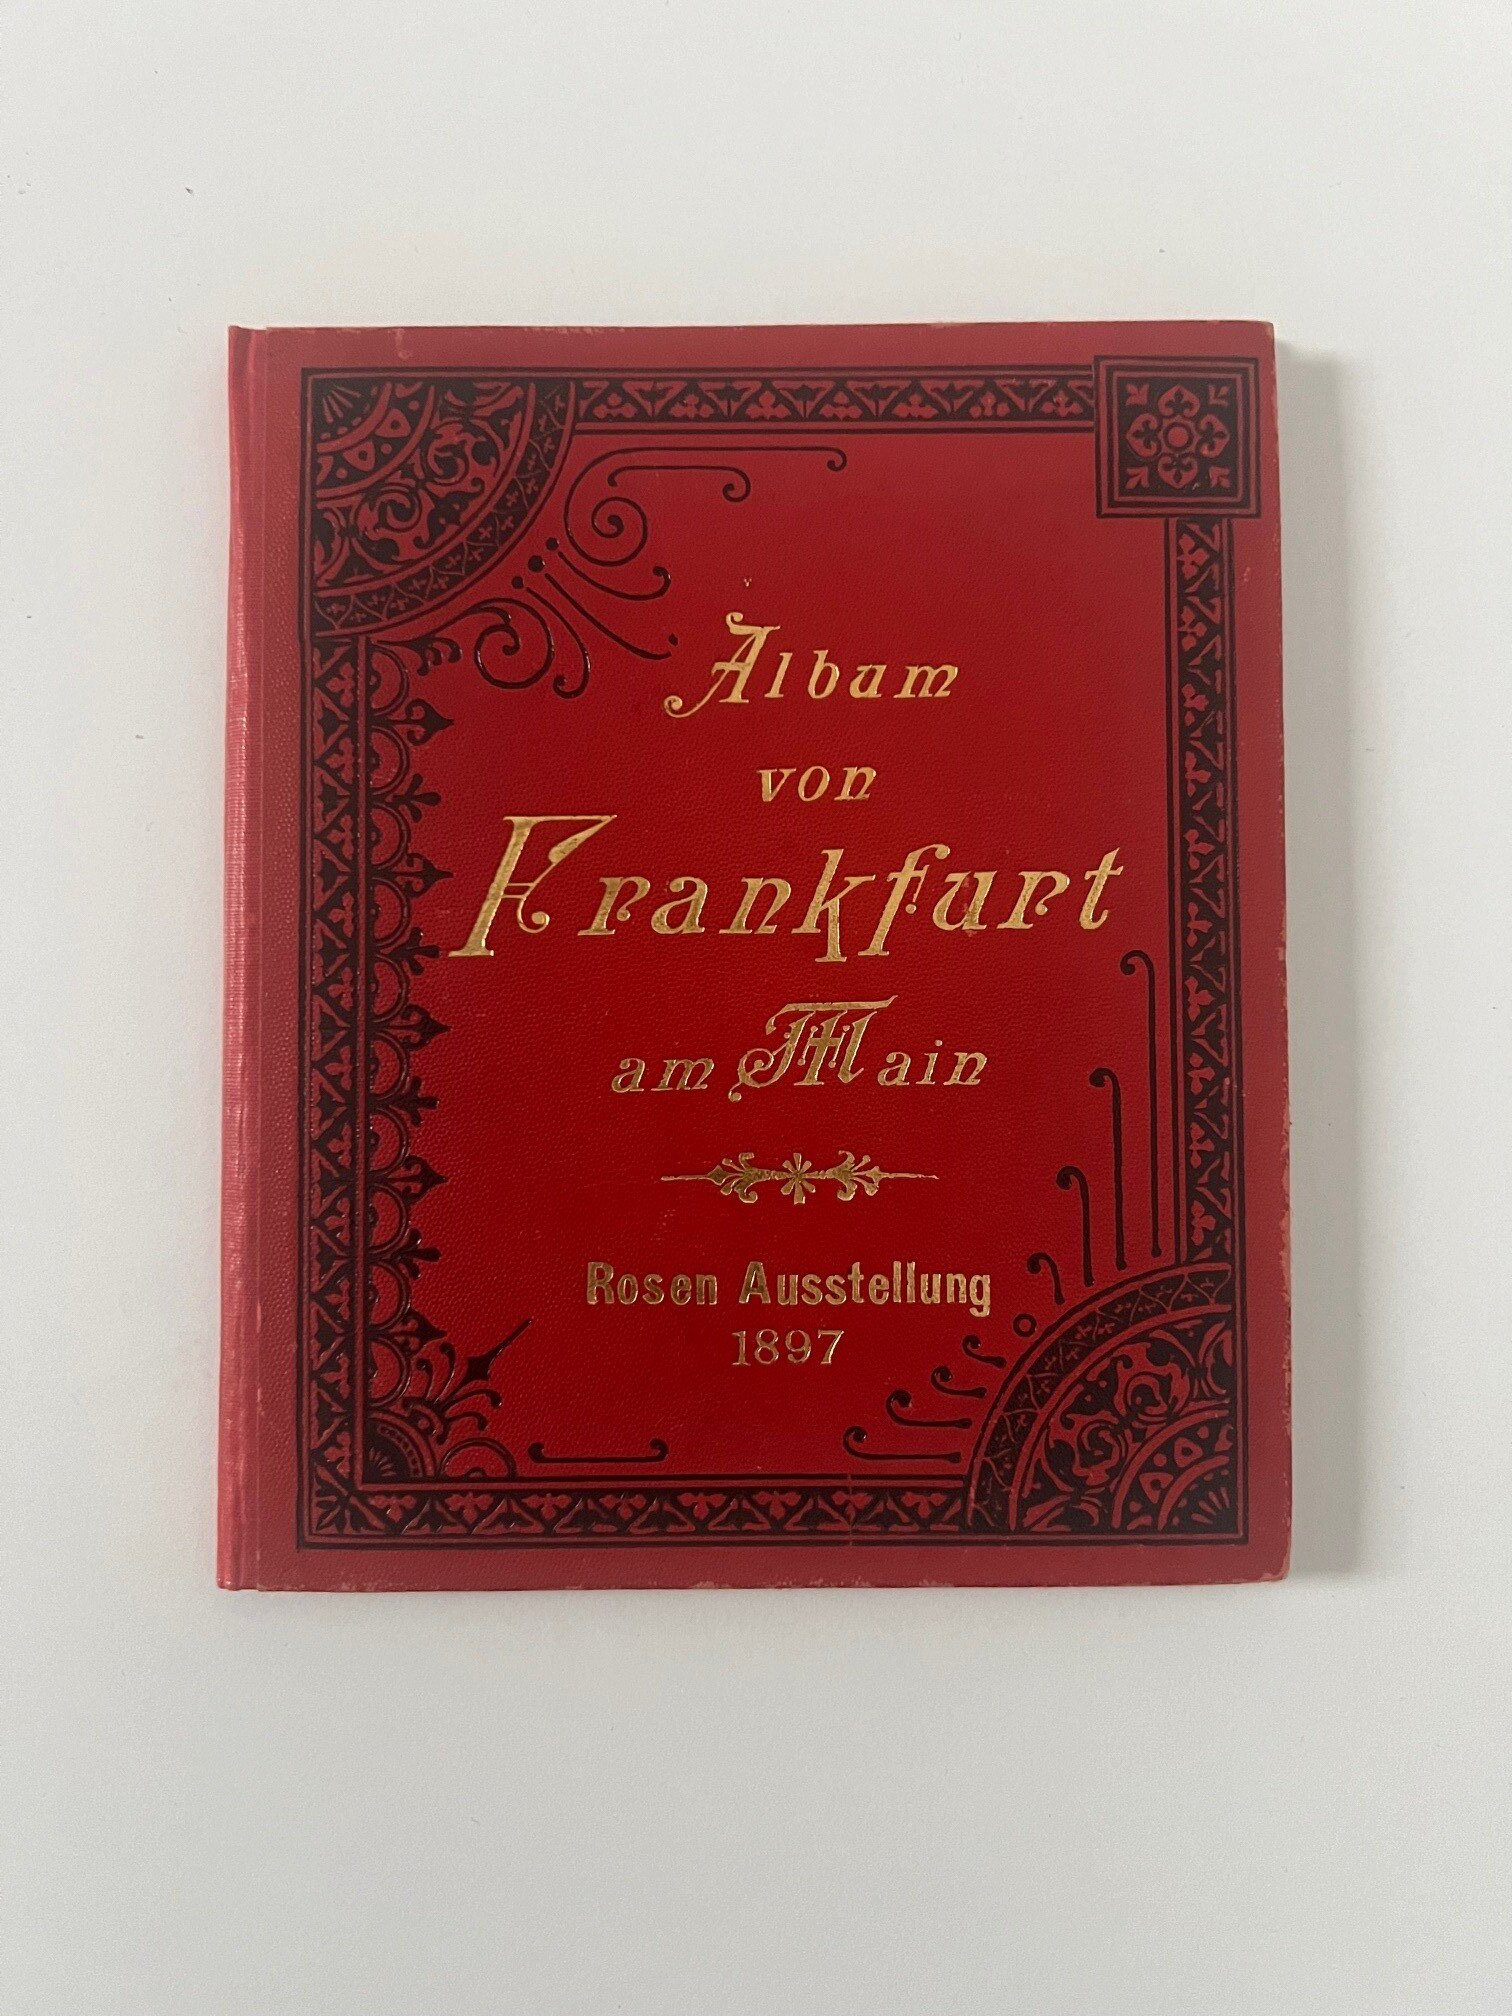 Verlag Gerhard Blümlein & Co, Album von Frankfurt am Main Rosen Ausstellung 1897, 36 Lithographien als Leporello, ca. 1897. (Taunus-Rhein-Main - Regionalgeschichtliche Sammlung Dr. Stefan Naas CC BY-NC-SA)